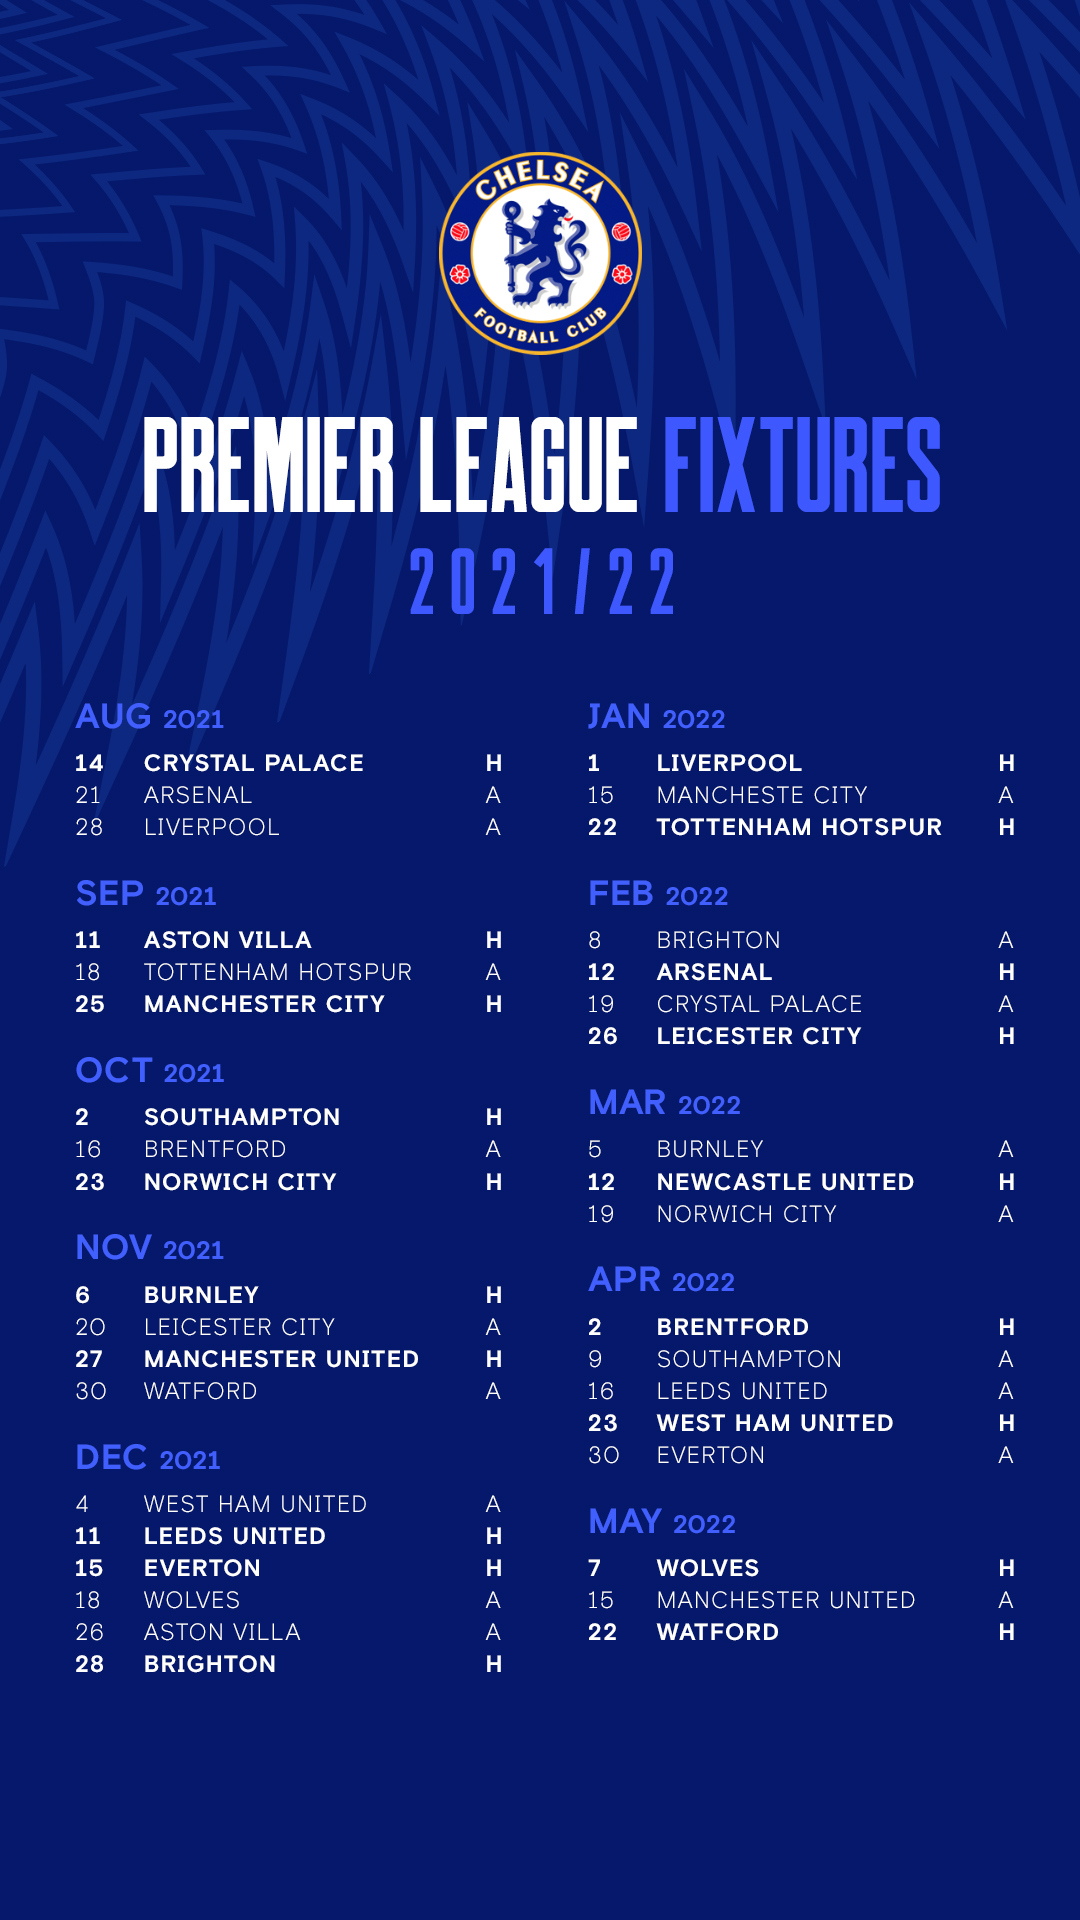 Chelsea premier league 2021-22 fixtures